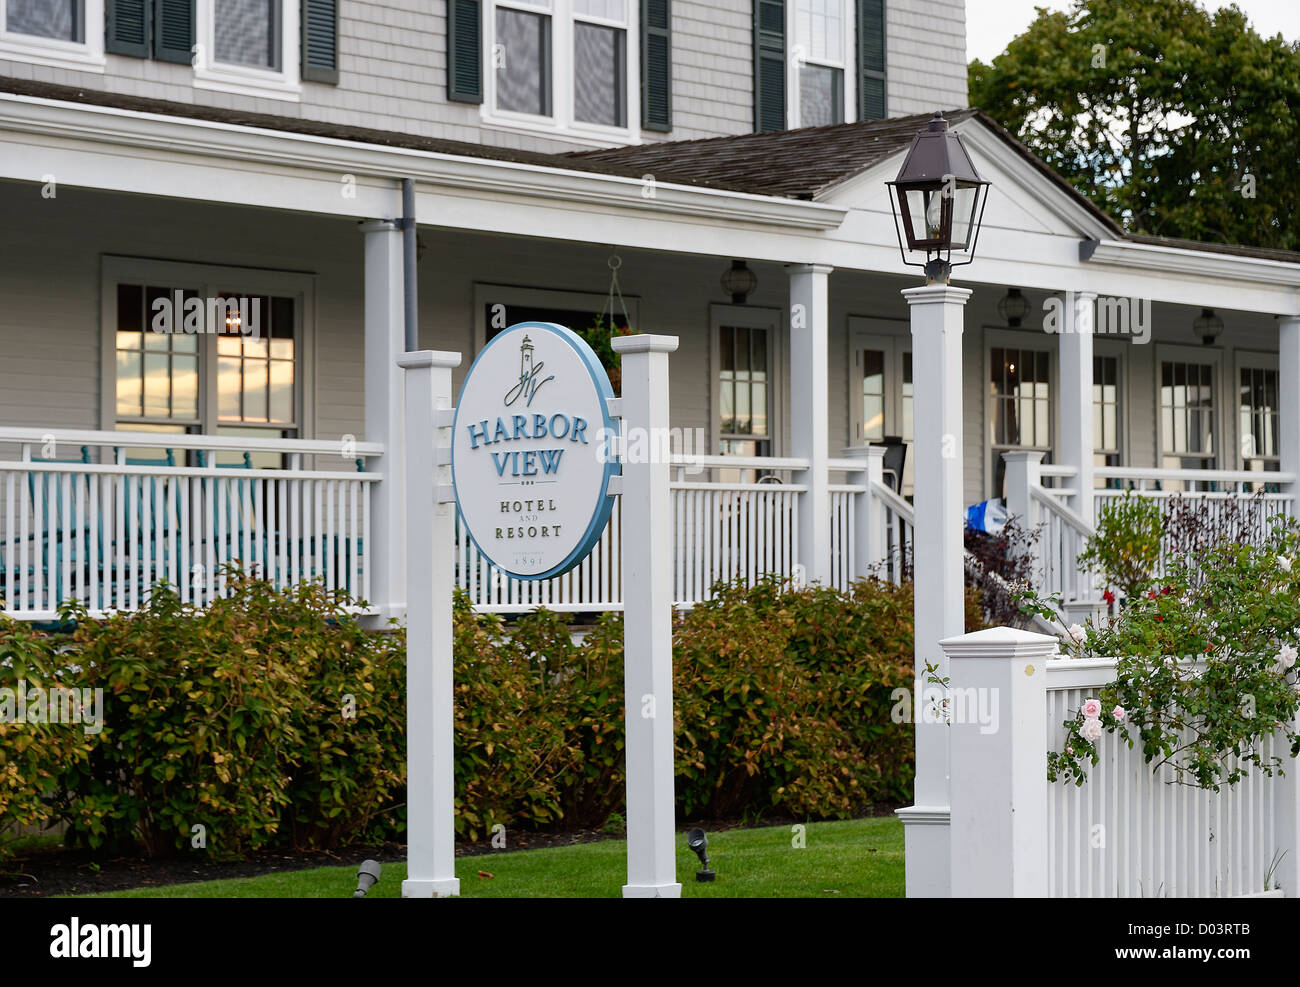 Harbor View Hotel, Edgartown, Martha's Vineyard, Massachusetts, USA Stock Photo